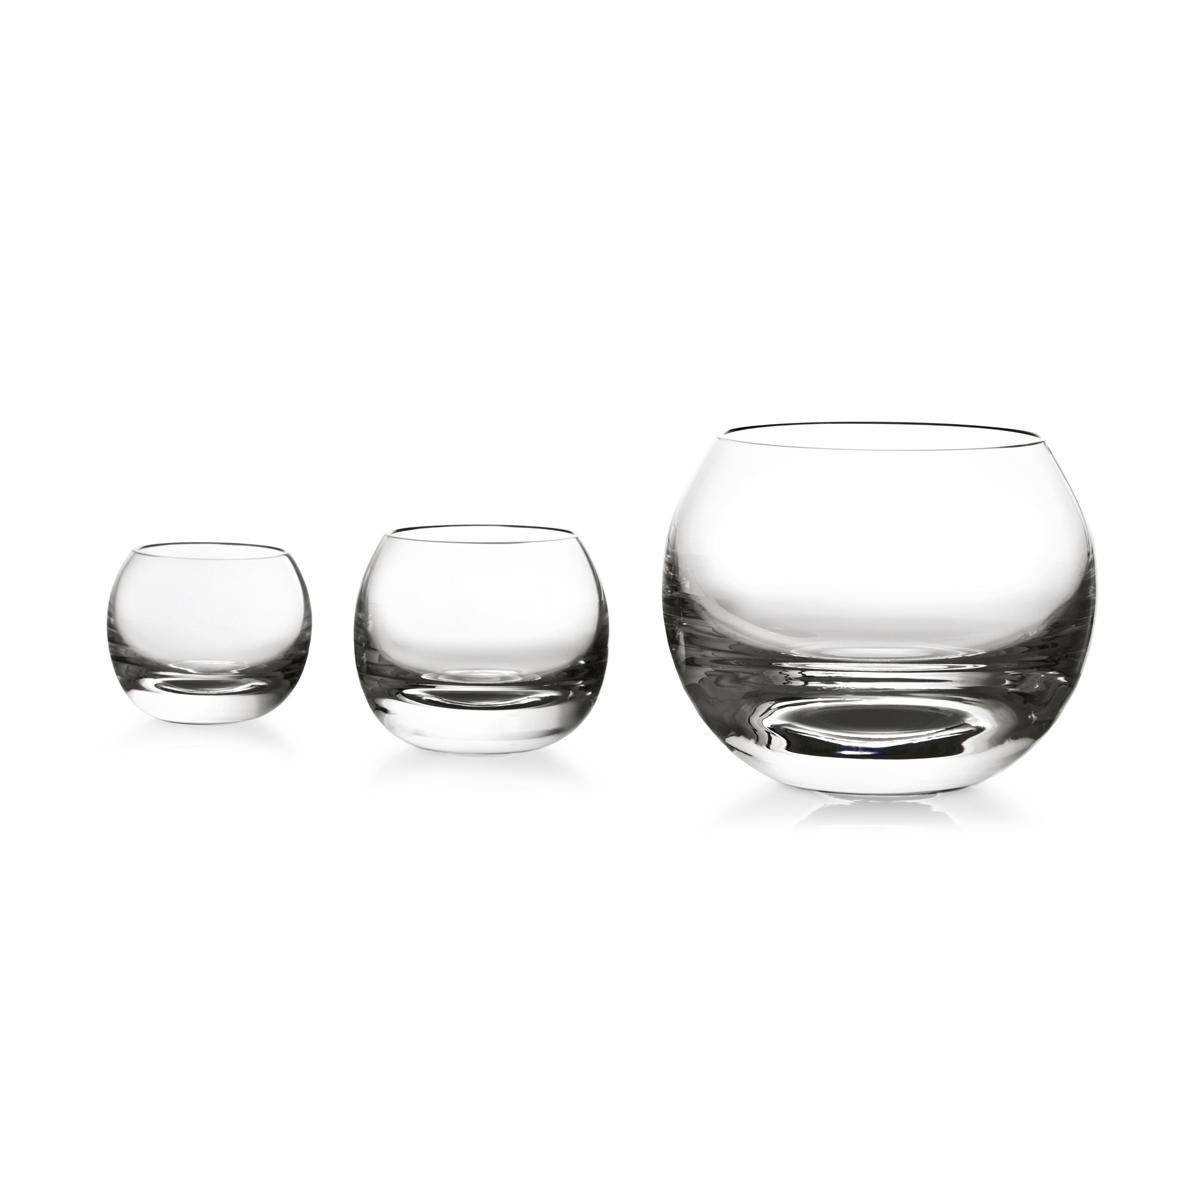 Whiskyglas aus geblasenem Glas in einer Form. Die Tulip-Kollektion ist eine Glaswarenfamilie von Aldo Cibic, der diese Stücke auf der Grenze zwischen klassischem und postmodernem Design entworfen hat. Die kühn-schlichten geometrischen Formen sind